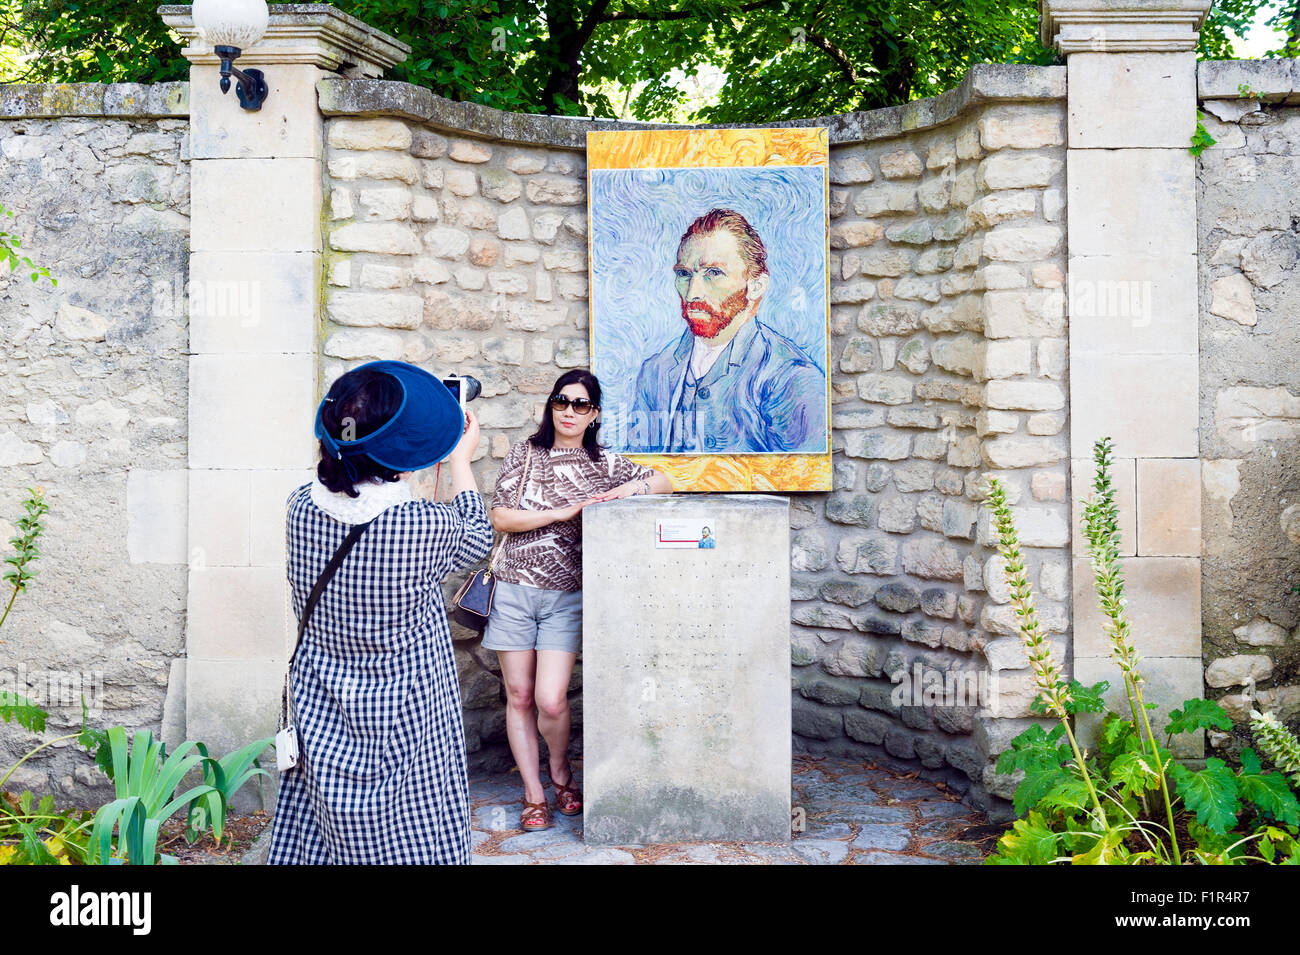 L'Europe. La France. Bouches-du-Rhône Saint-Rémy-de-Provence. Les touristes chinois se photographier devant une statue de Van Gogh Banque D'Images